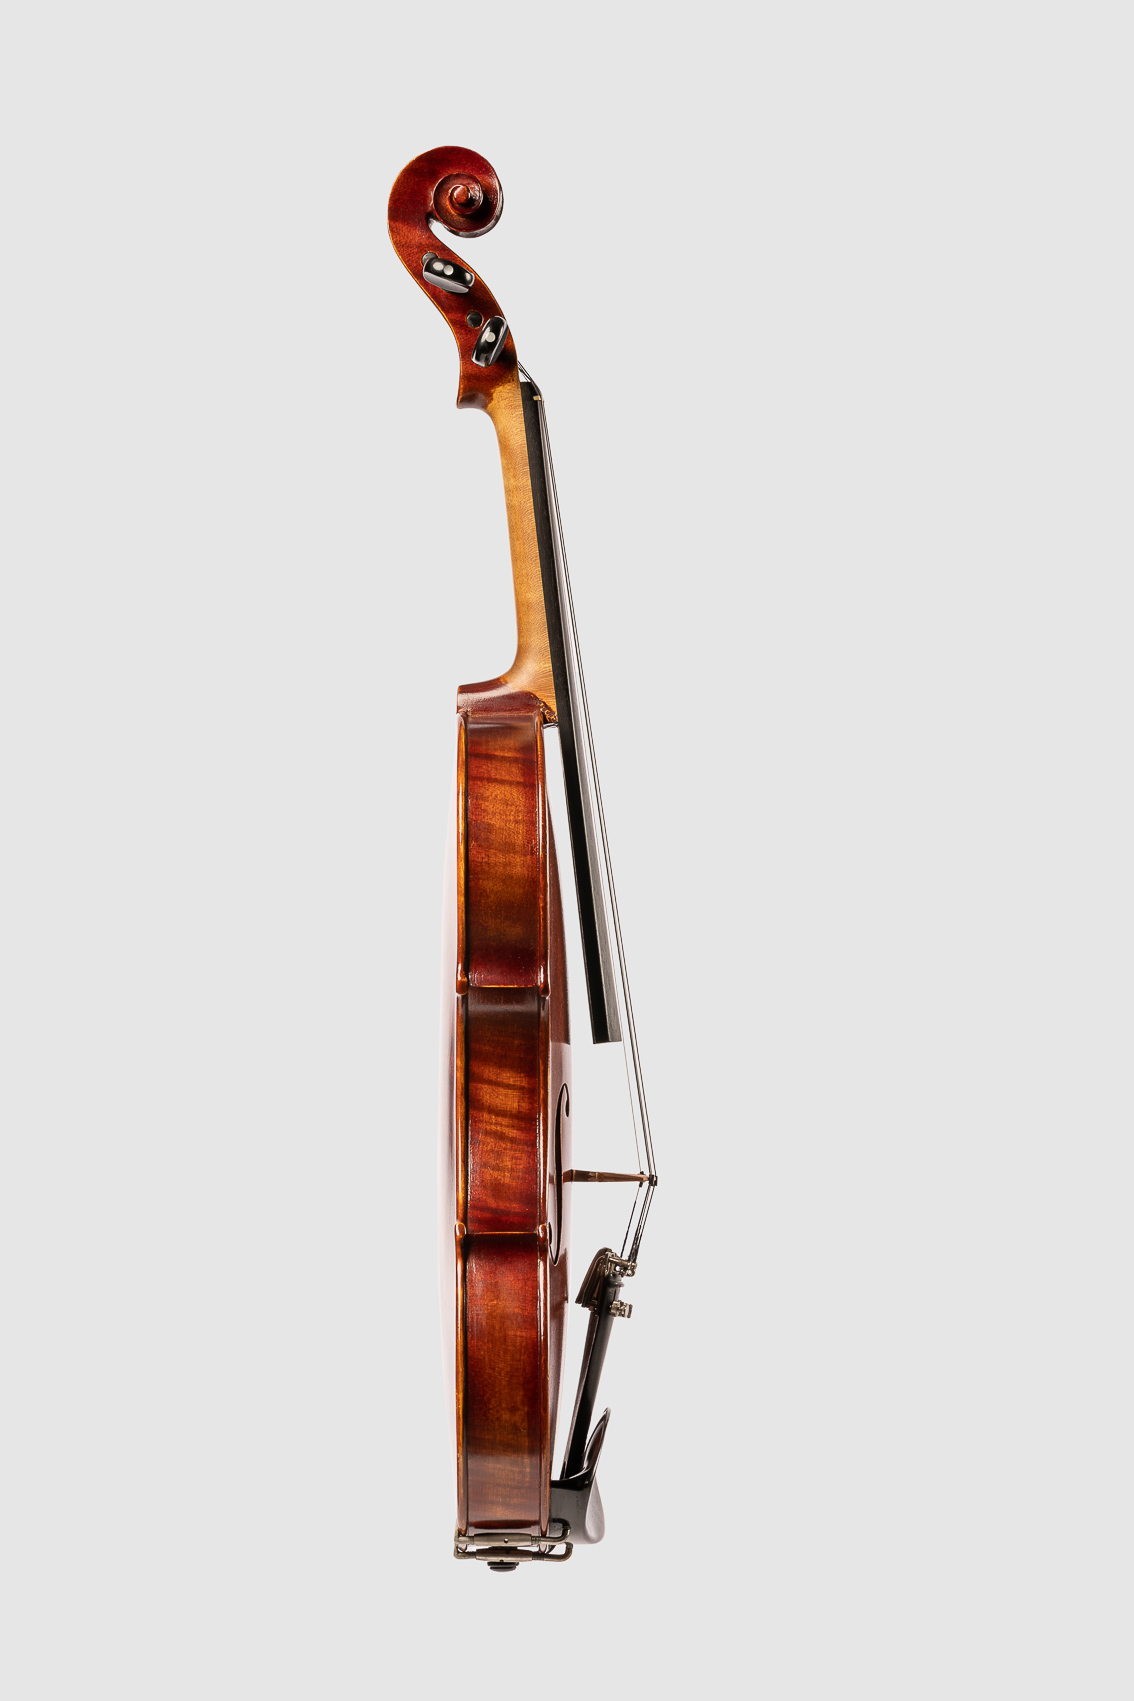 Geige bzw. Bratsche, Streichinstrument von der Seite. Freisteller, Packshoot.